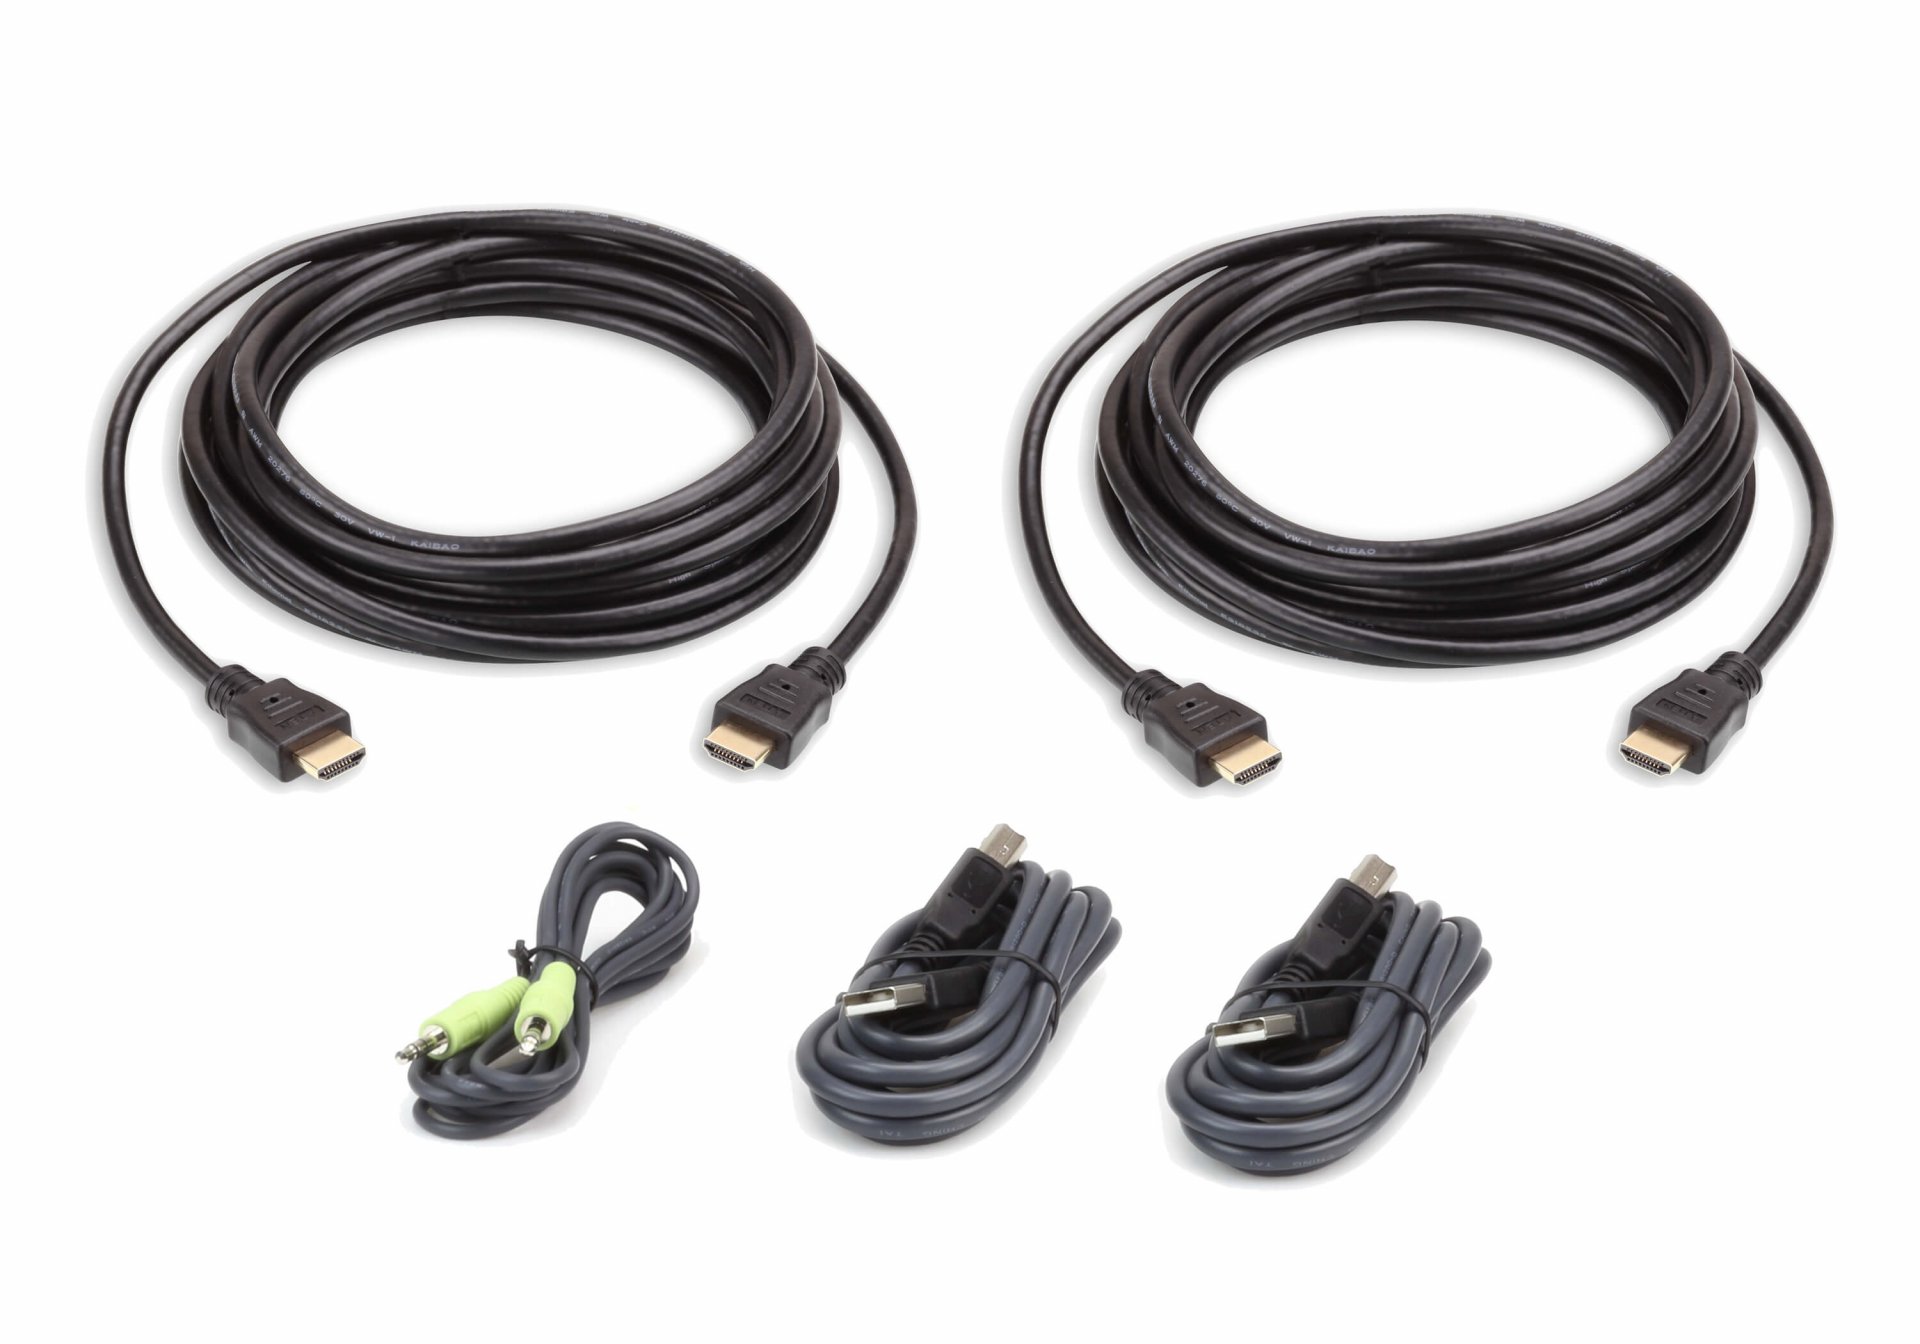 2L-7D03UHX5 : 3M USB HDMI Dual Display Secure KVM Cable Kit